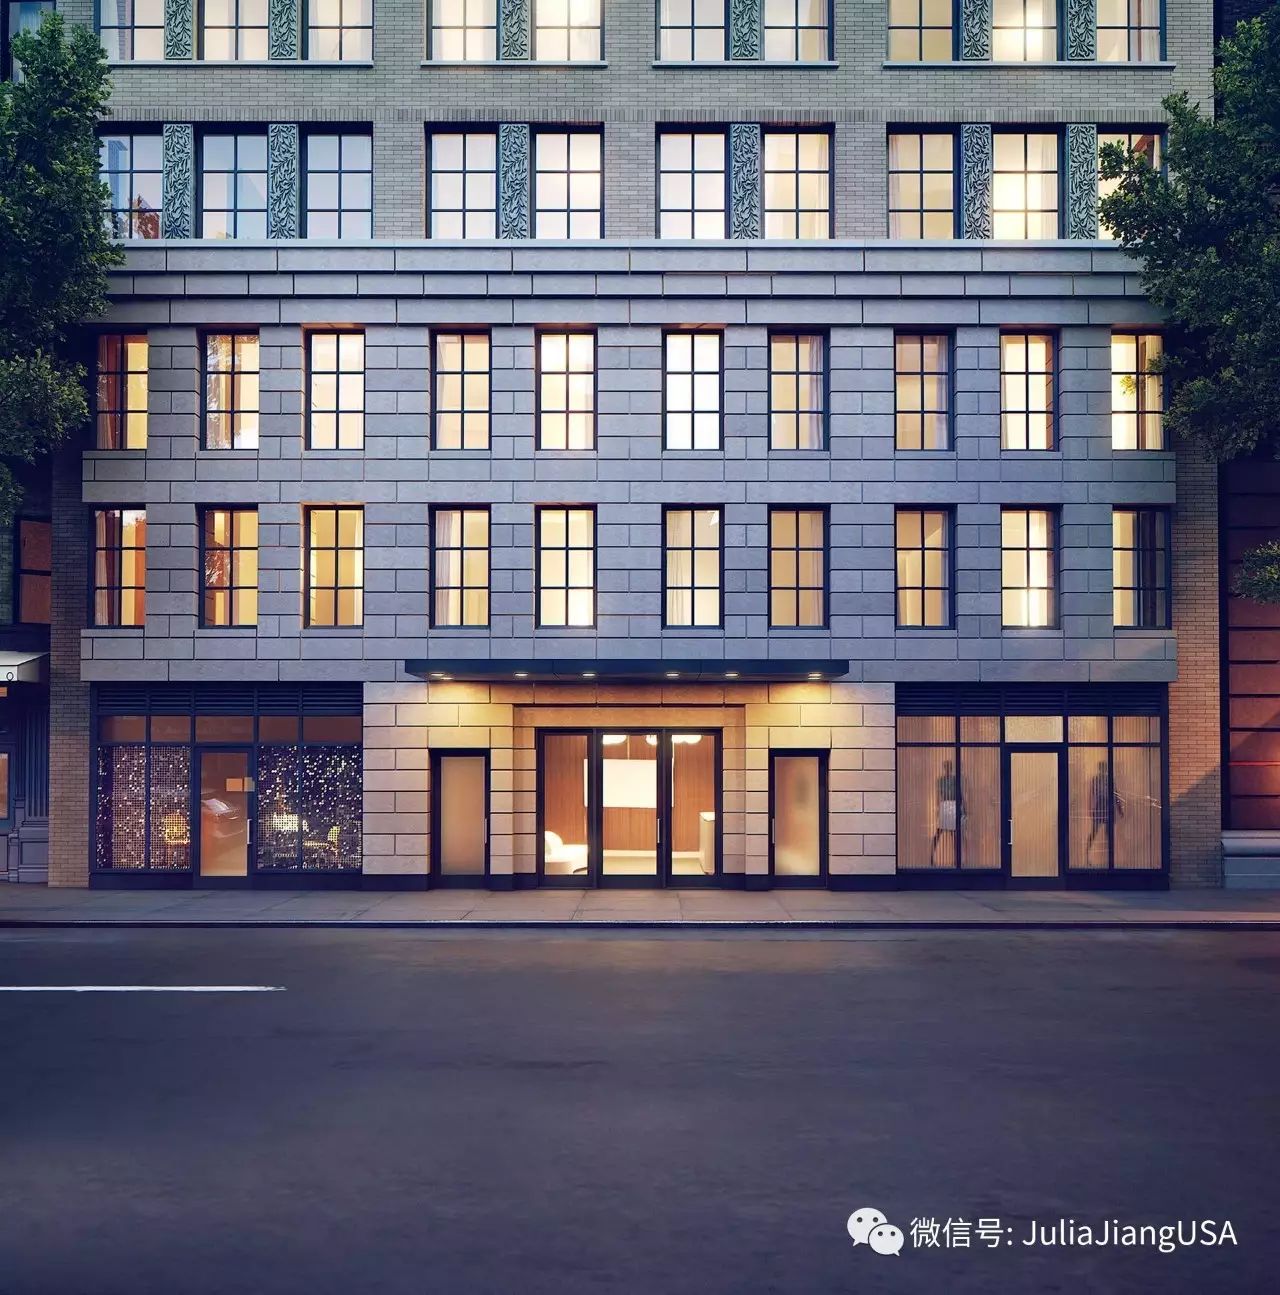 上西区:207West79新经典 全新在建产权公寓 结合战前住宅经典和现代生活理念重新定义新标准